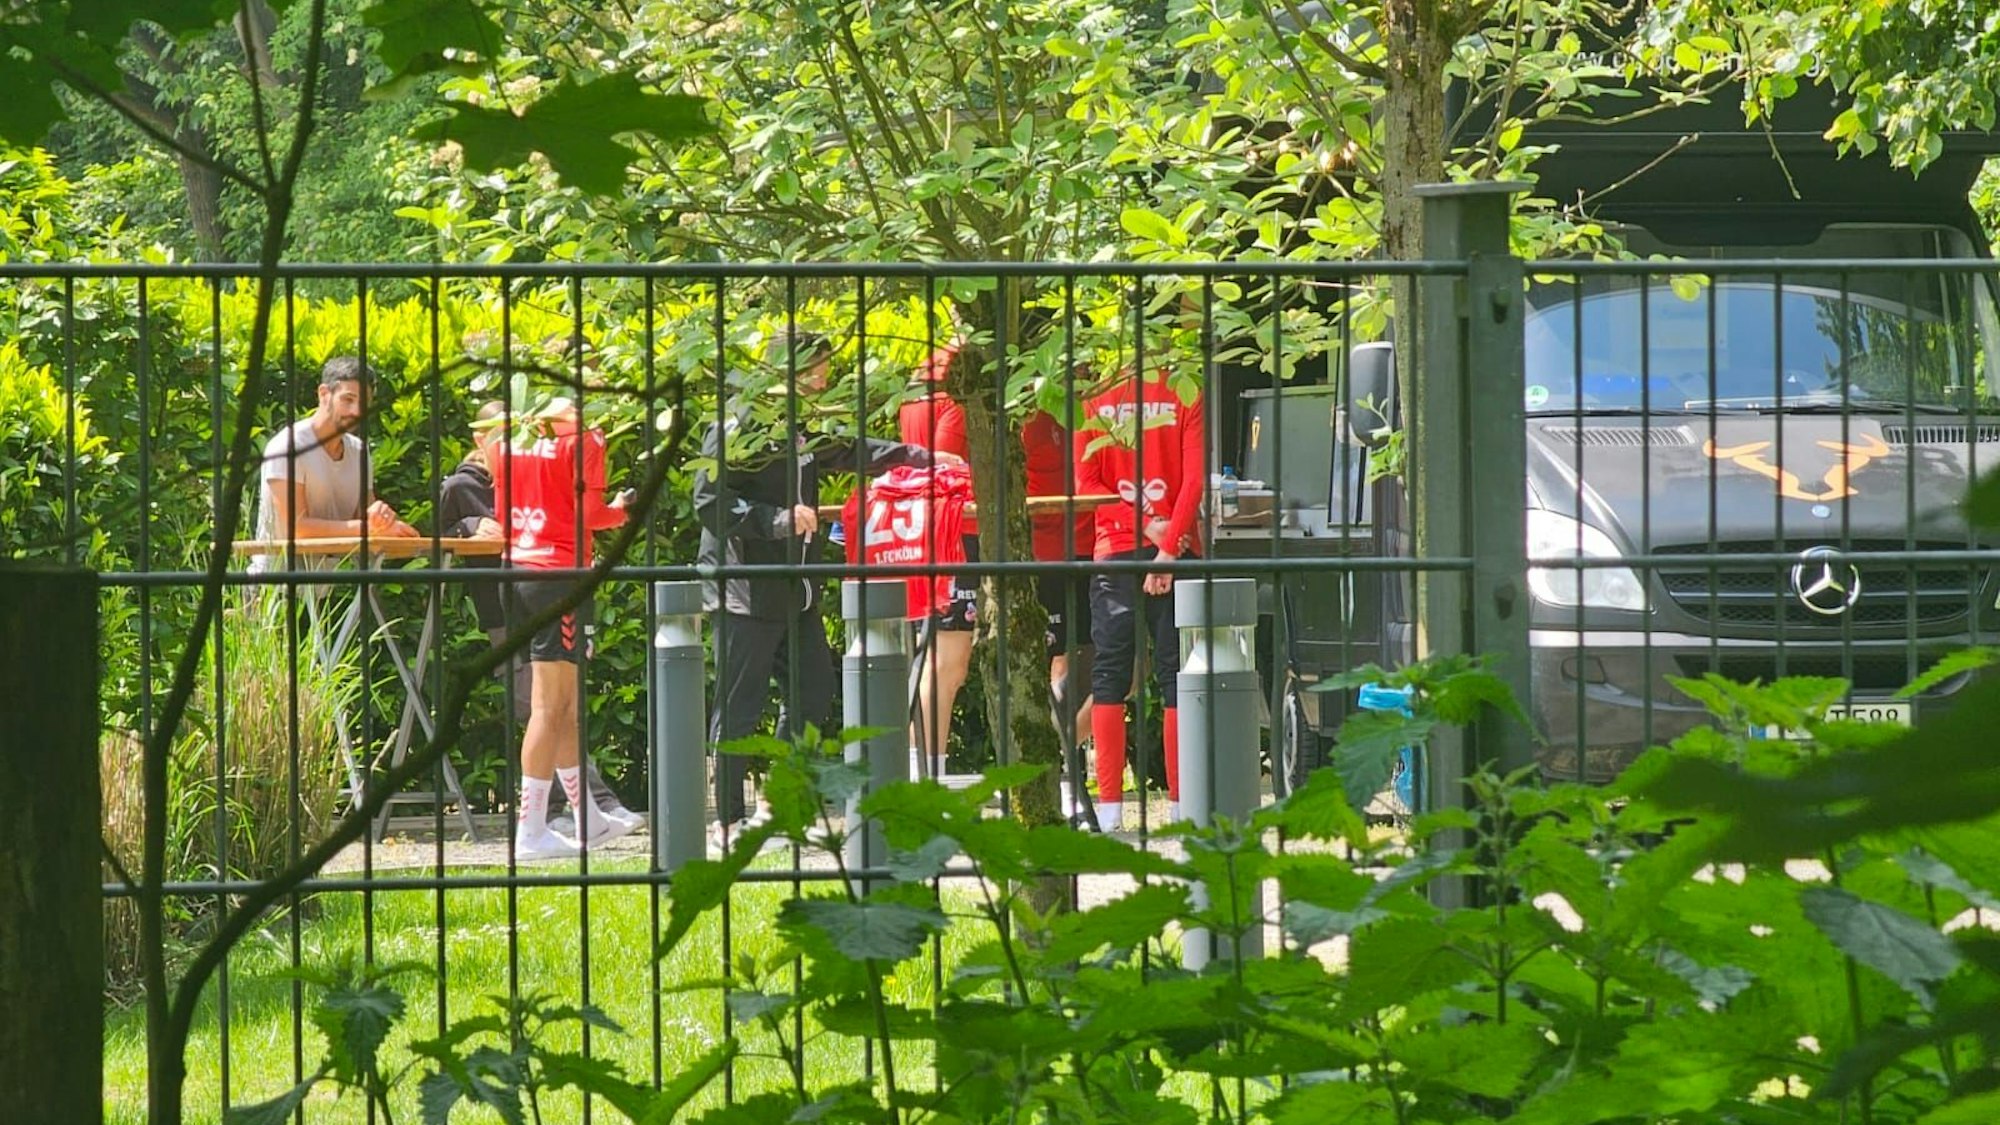 Spieler des 1. FC Köln stehen vor einem Foodtruck.